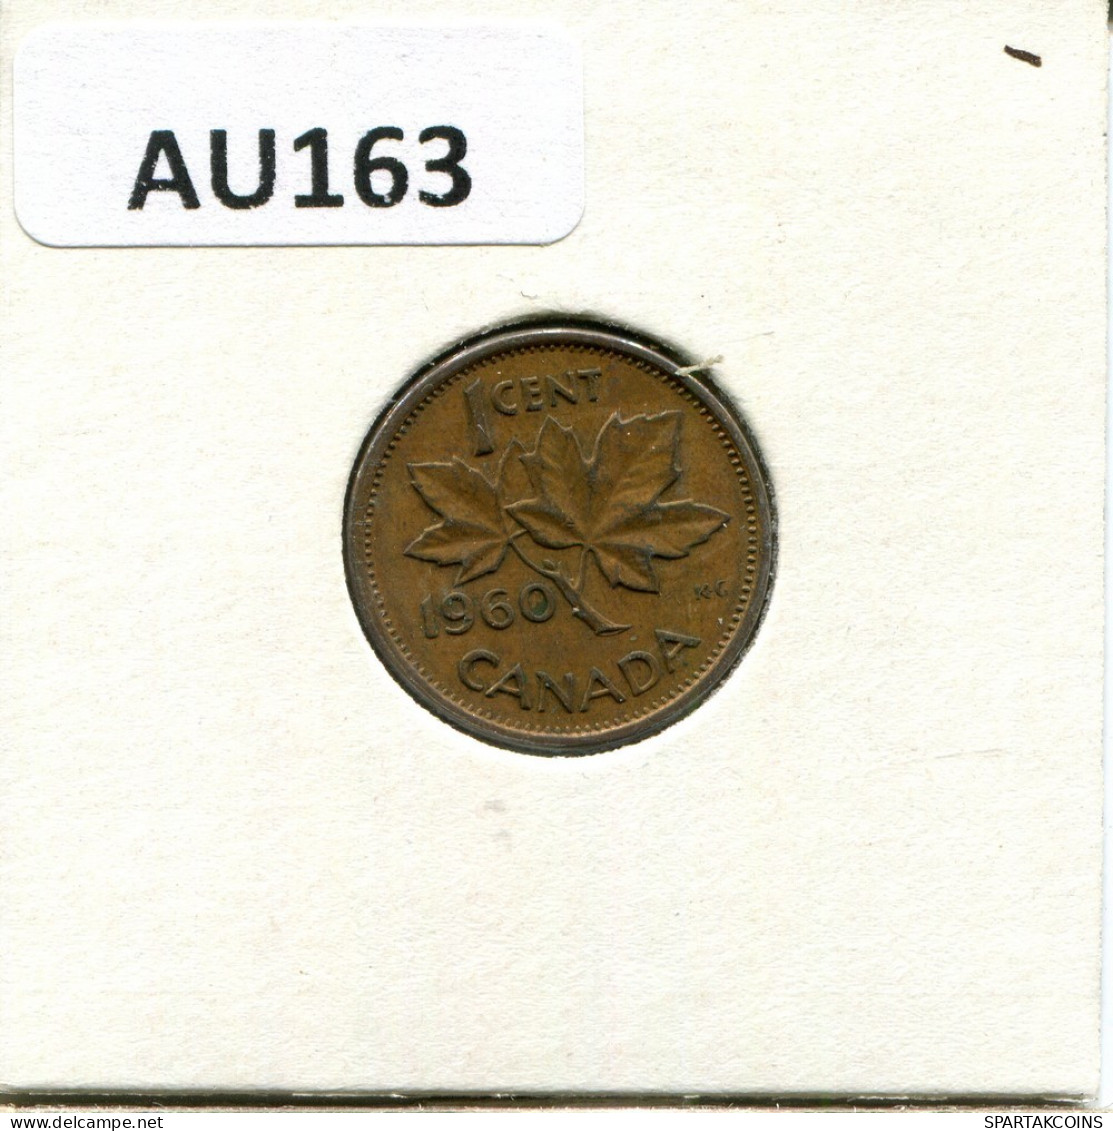 1 CENT 1960 CANADA Moneda #AU163.E.A - Canada